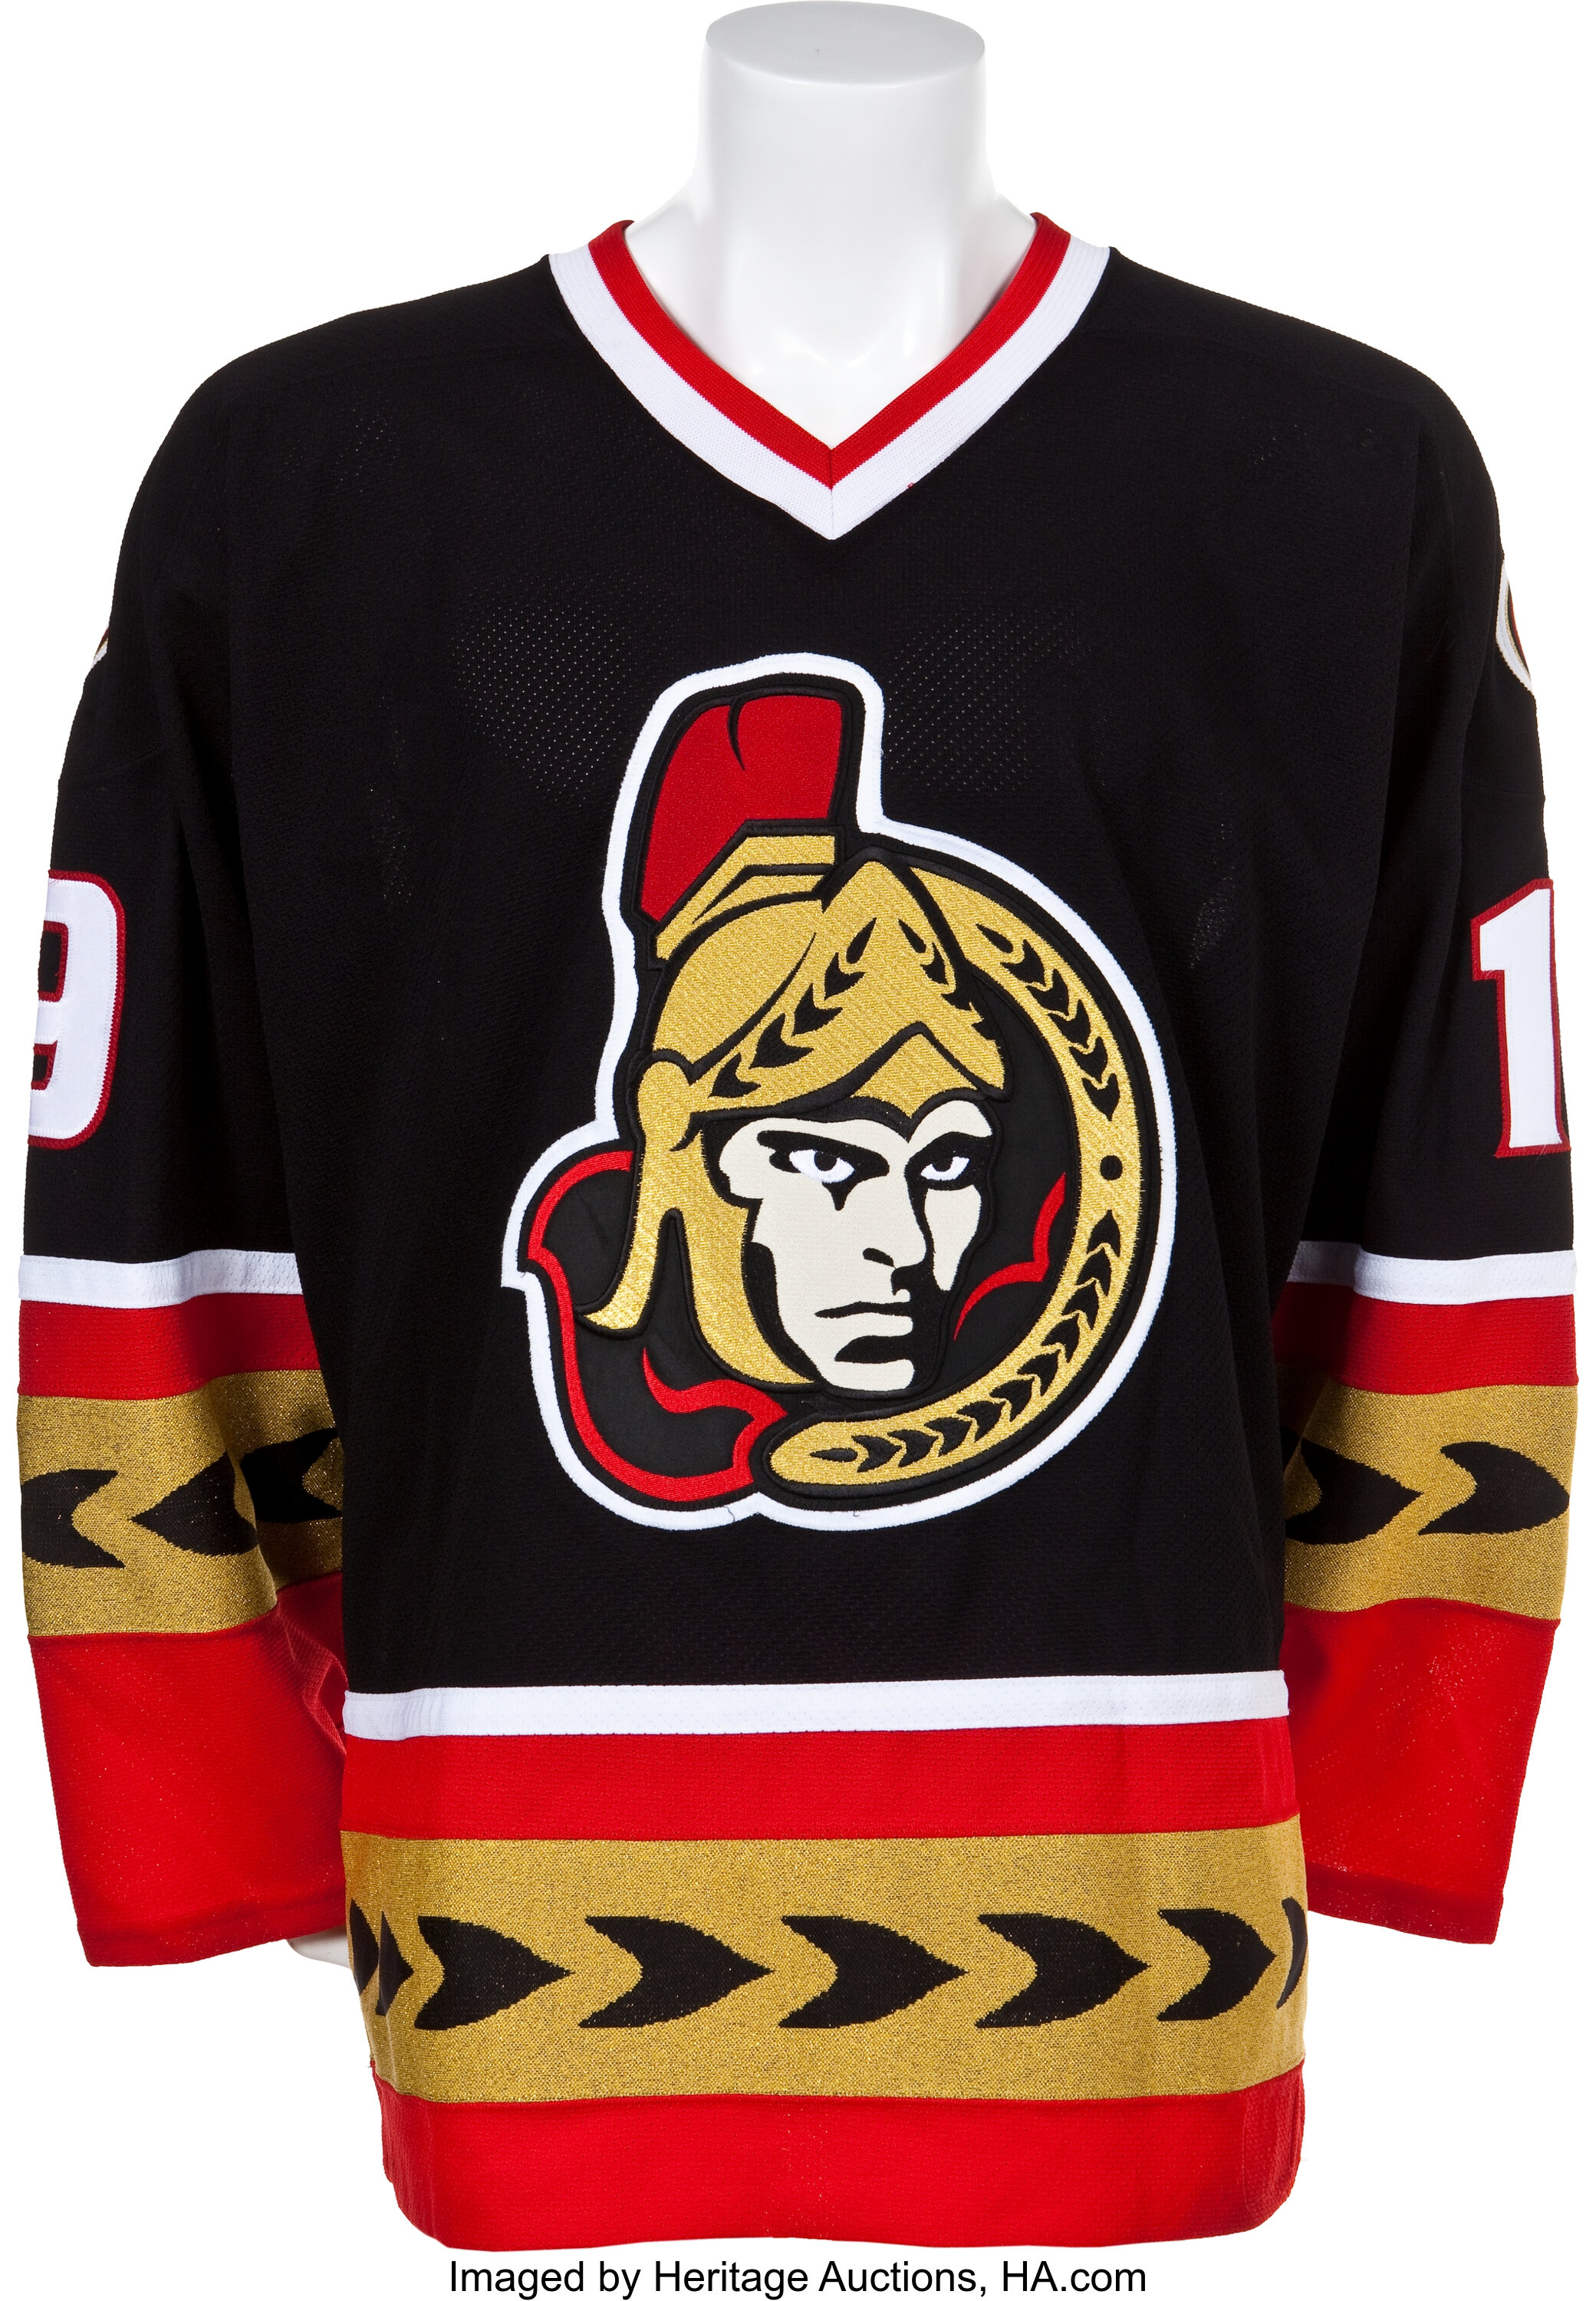 NHL Ottawa Senators 2007-08 uniform and jersey original art